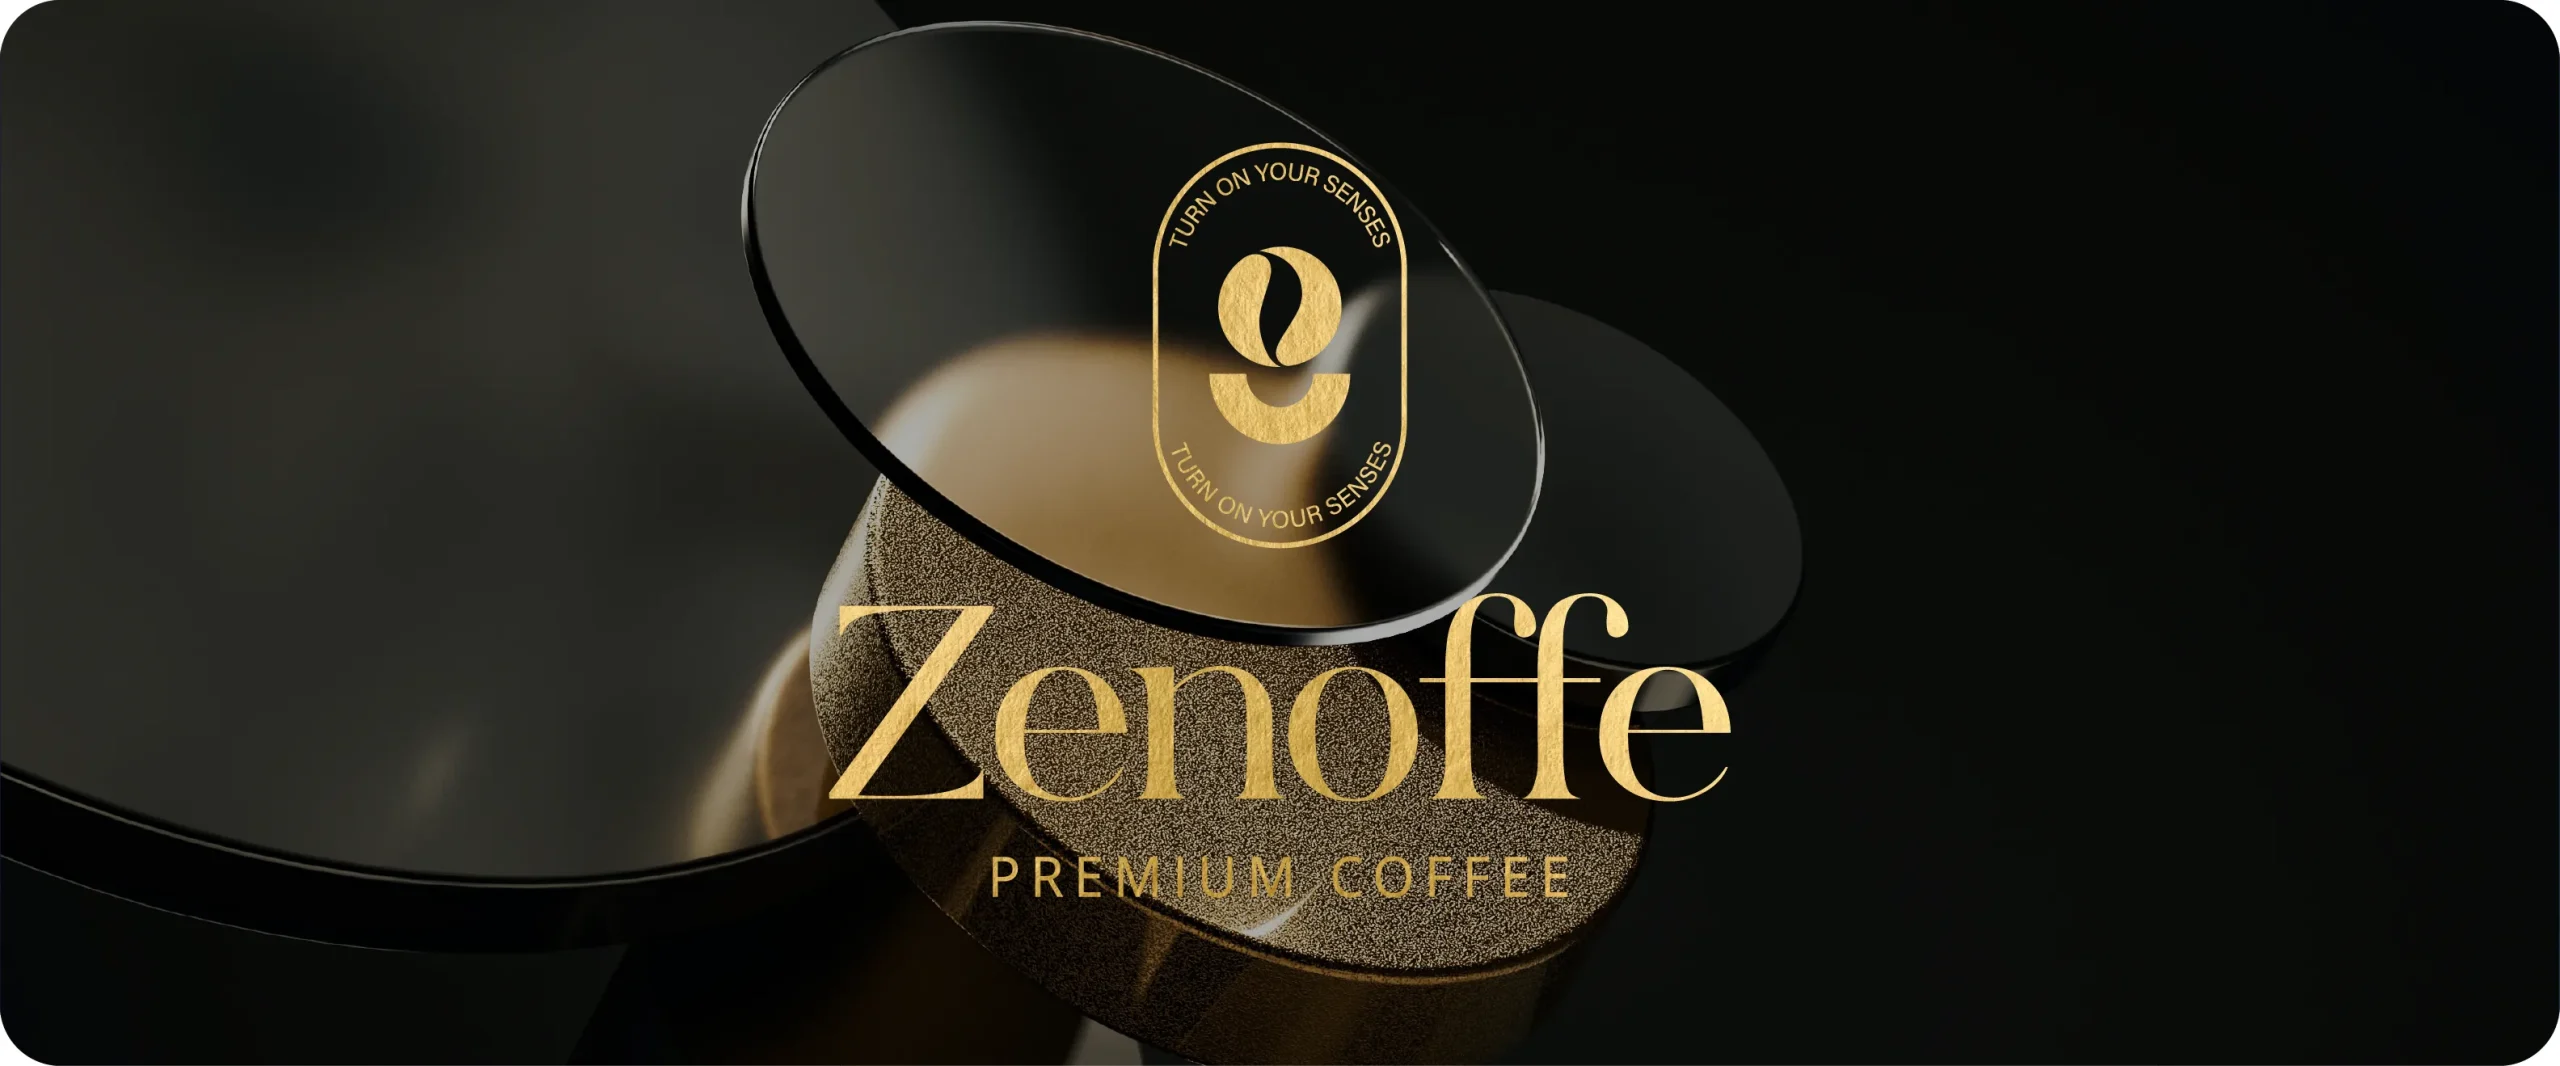 Zenoffee premium coffee